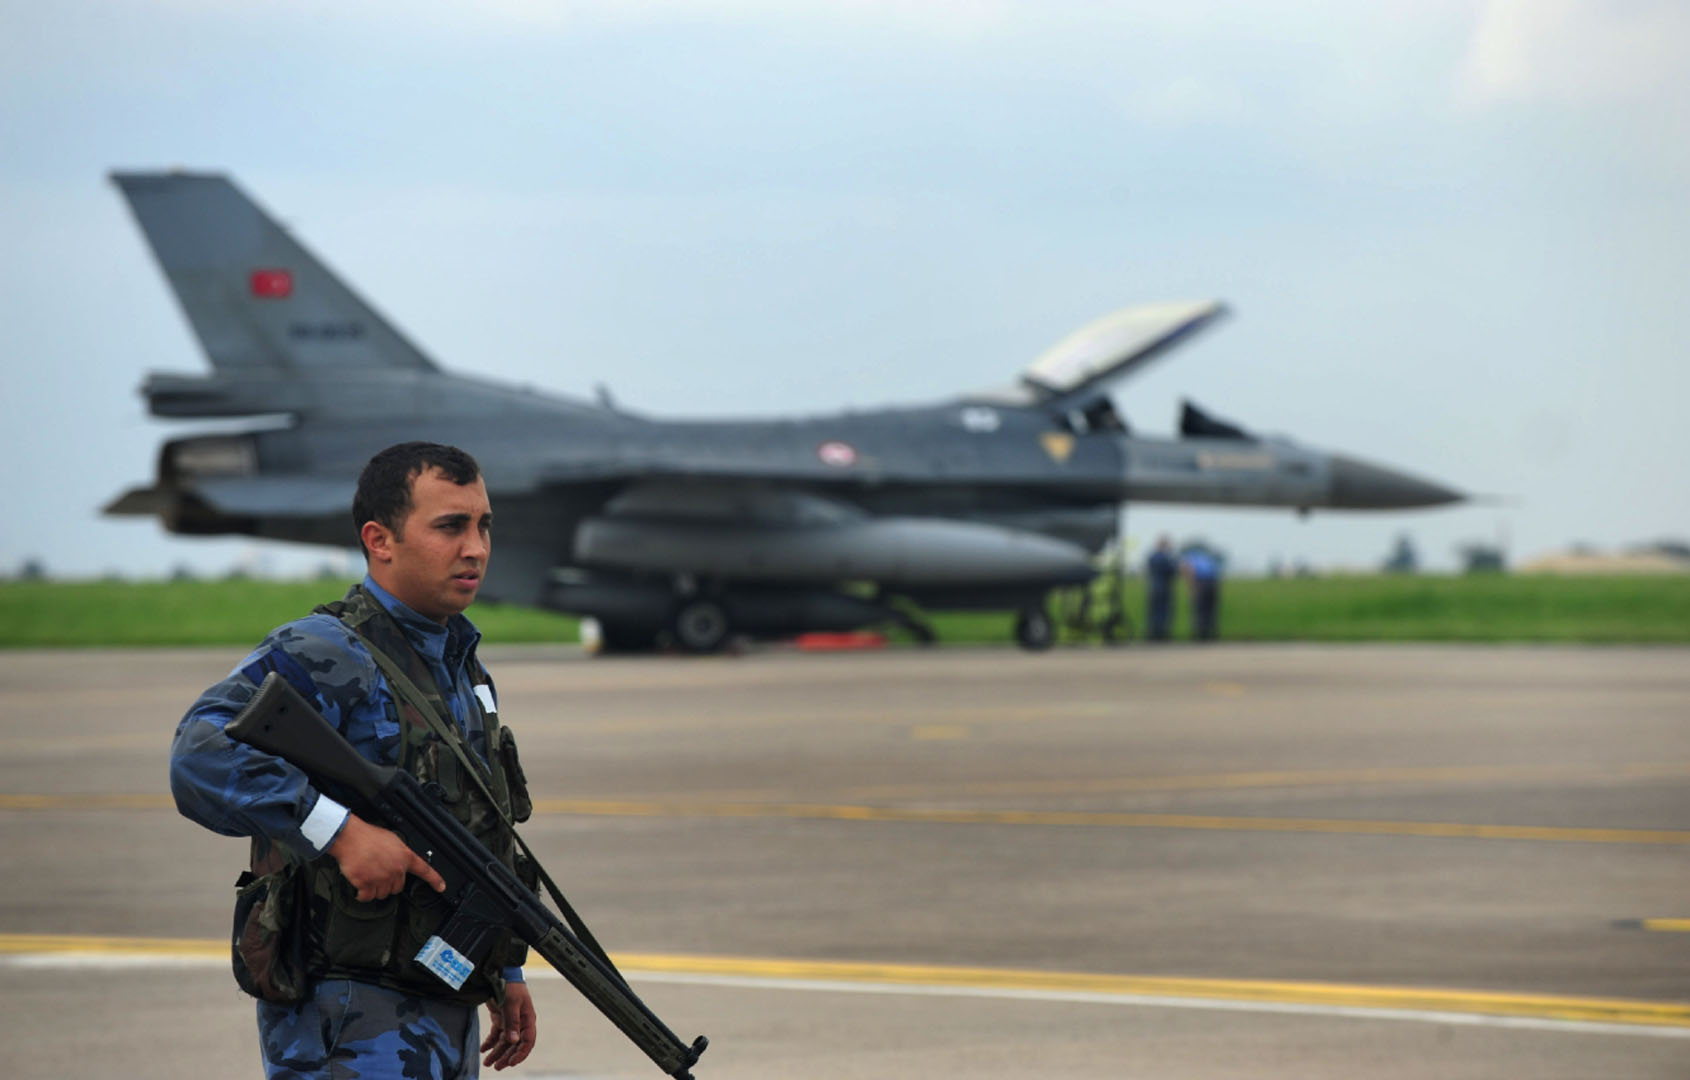 Yunanistan Türk Hava Kuvvetleri engeline takıldı! Türk hava sahasını ihlal eden Yunanistan’a gereken cevap verildi